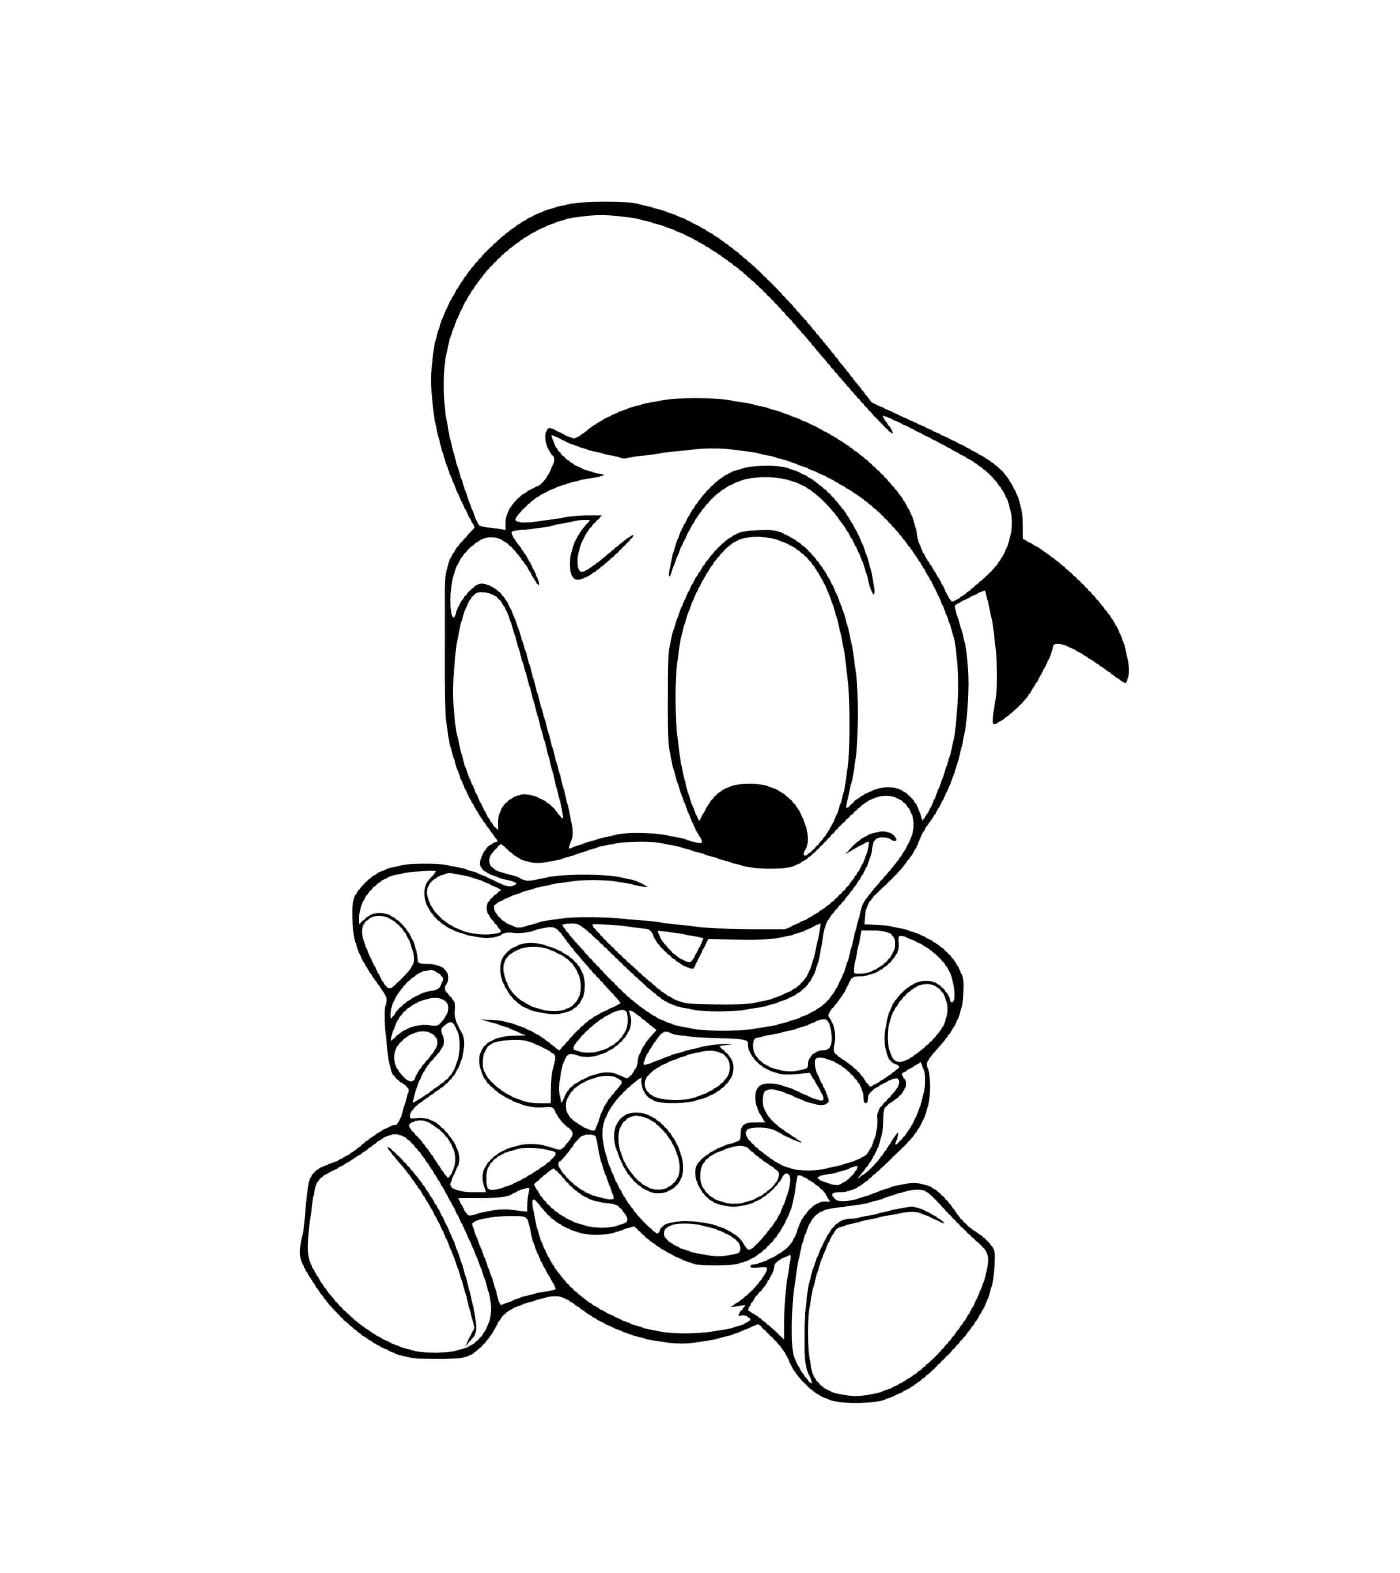  Donald Duck Disney's baby 